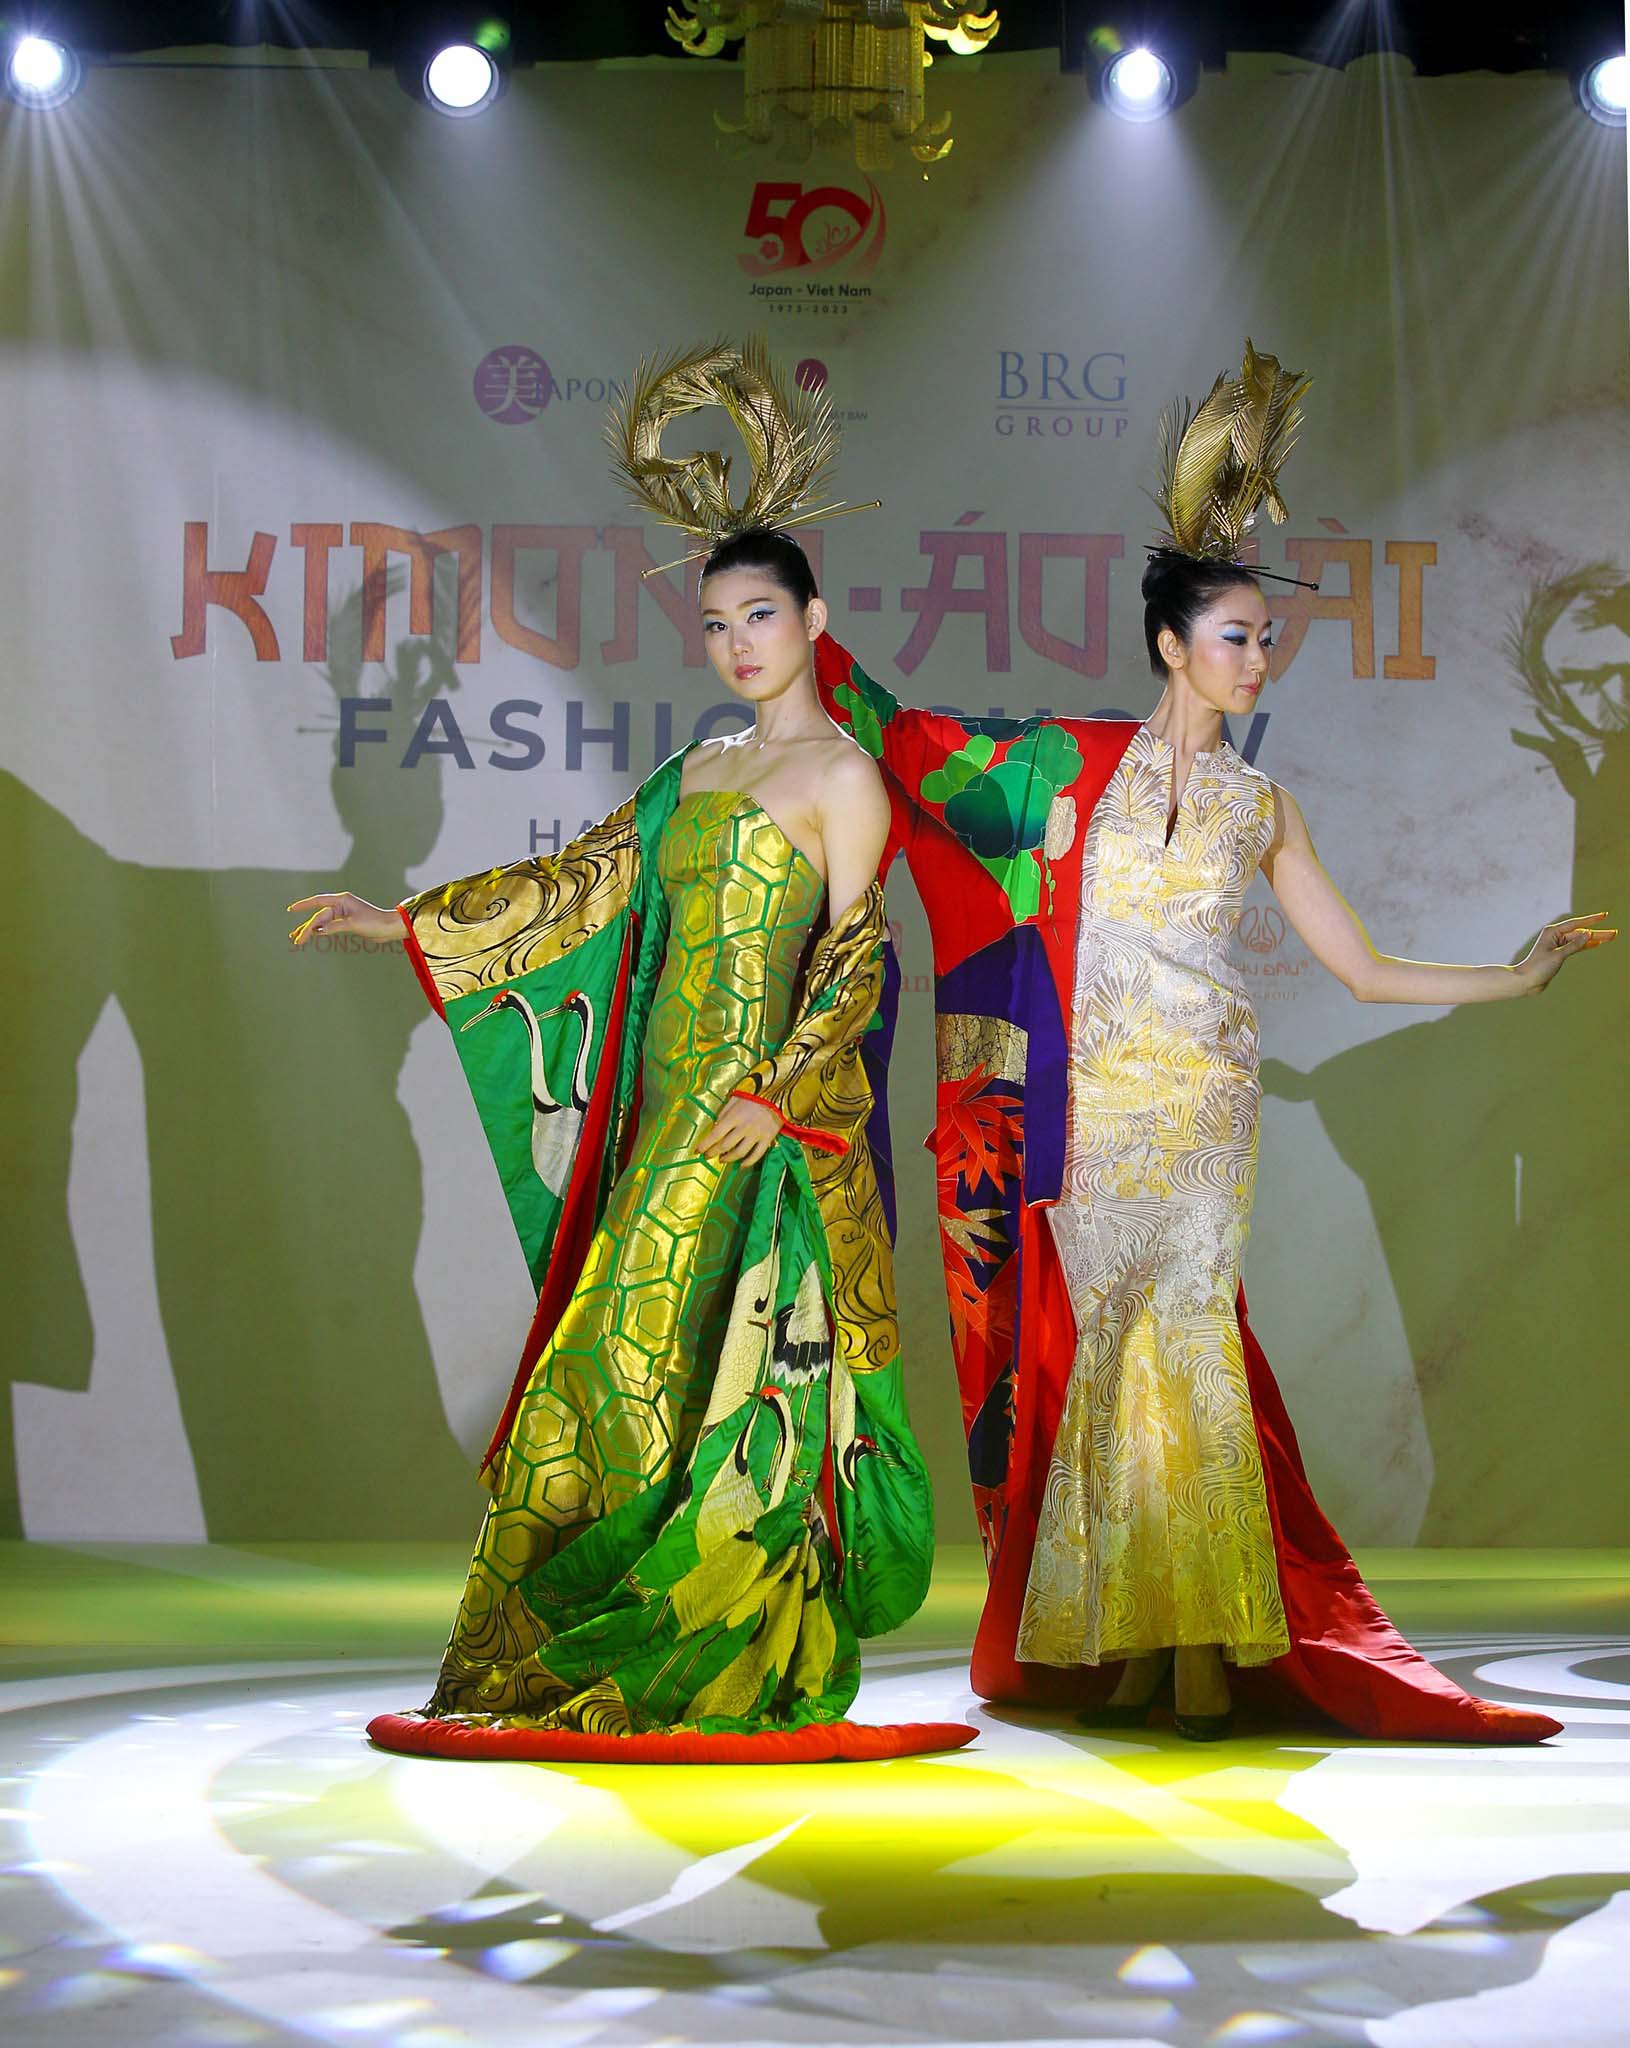 Chương trình Kimono - Aodai Fashion Show đã dẫn lối khán giả tới mê cung xúc cảm với “bản hoà ca” tuyệt đỉnh giữa trang phục truyền thống của phụ nữ hai nước.